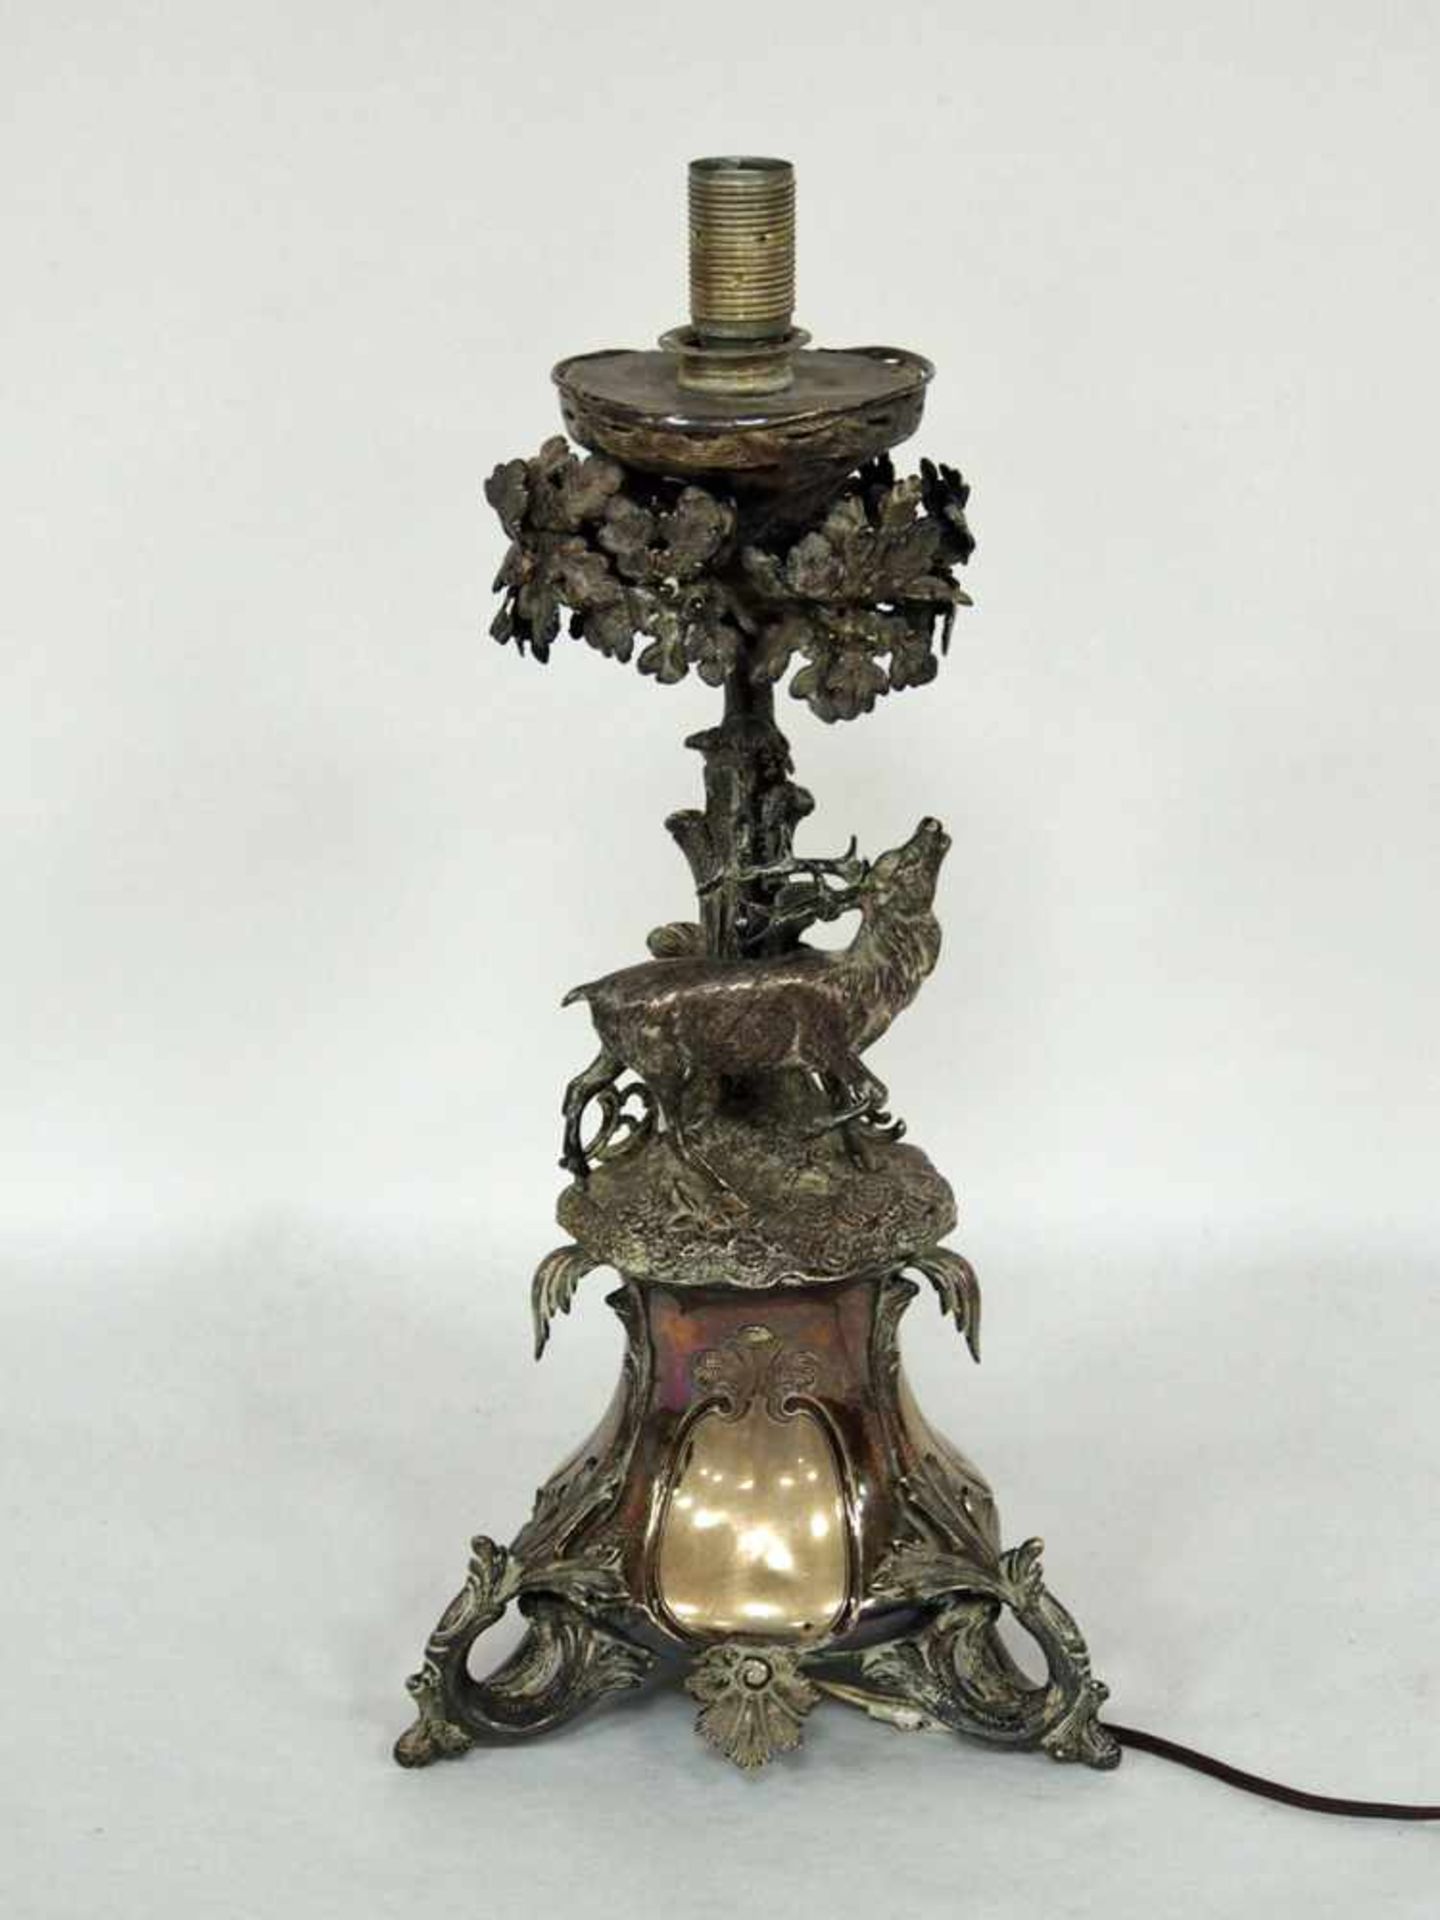 Kerzenleuchter13-lötiges Silber, Deutsch 19. Jahrhundert, Höhe 38 cm (später elektrifiziert, Höhe 43